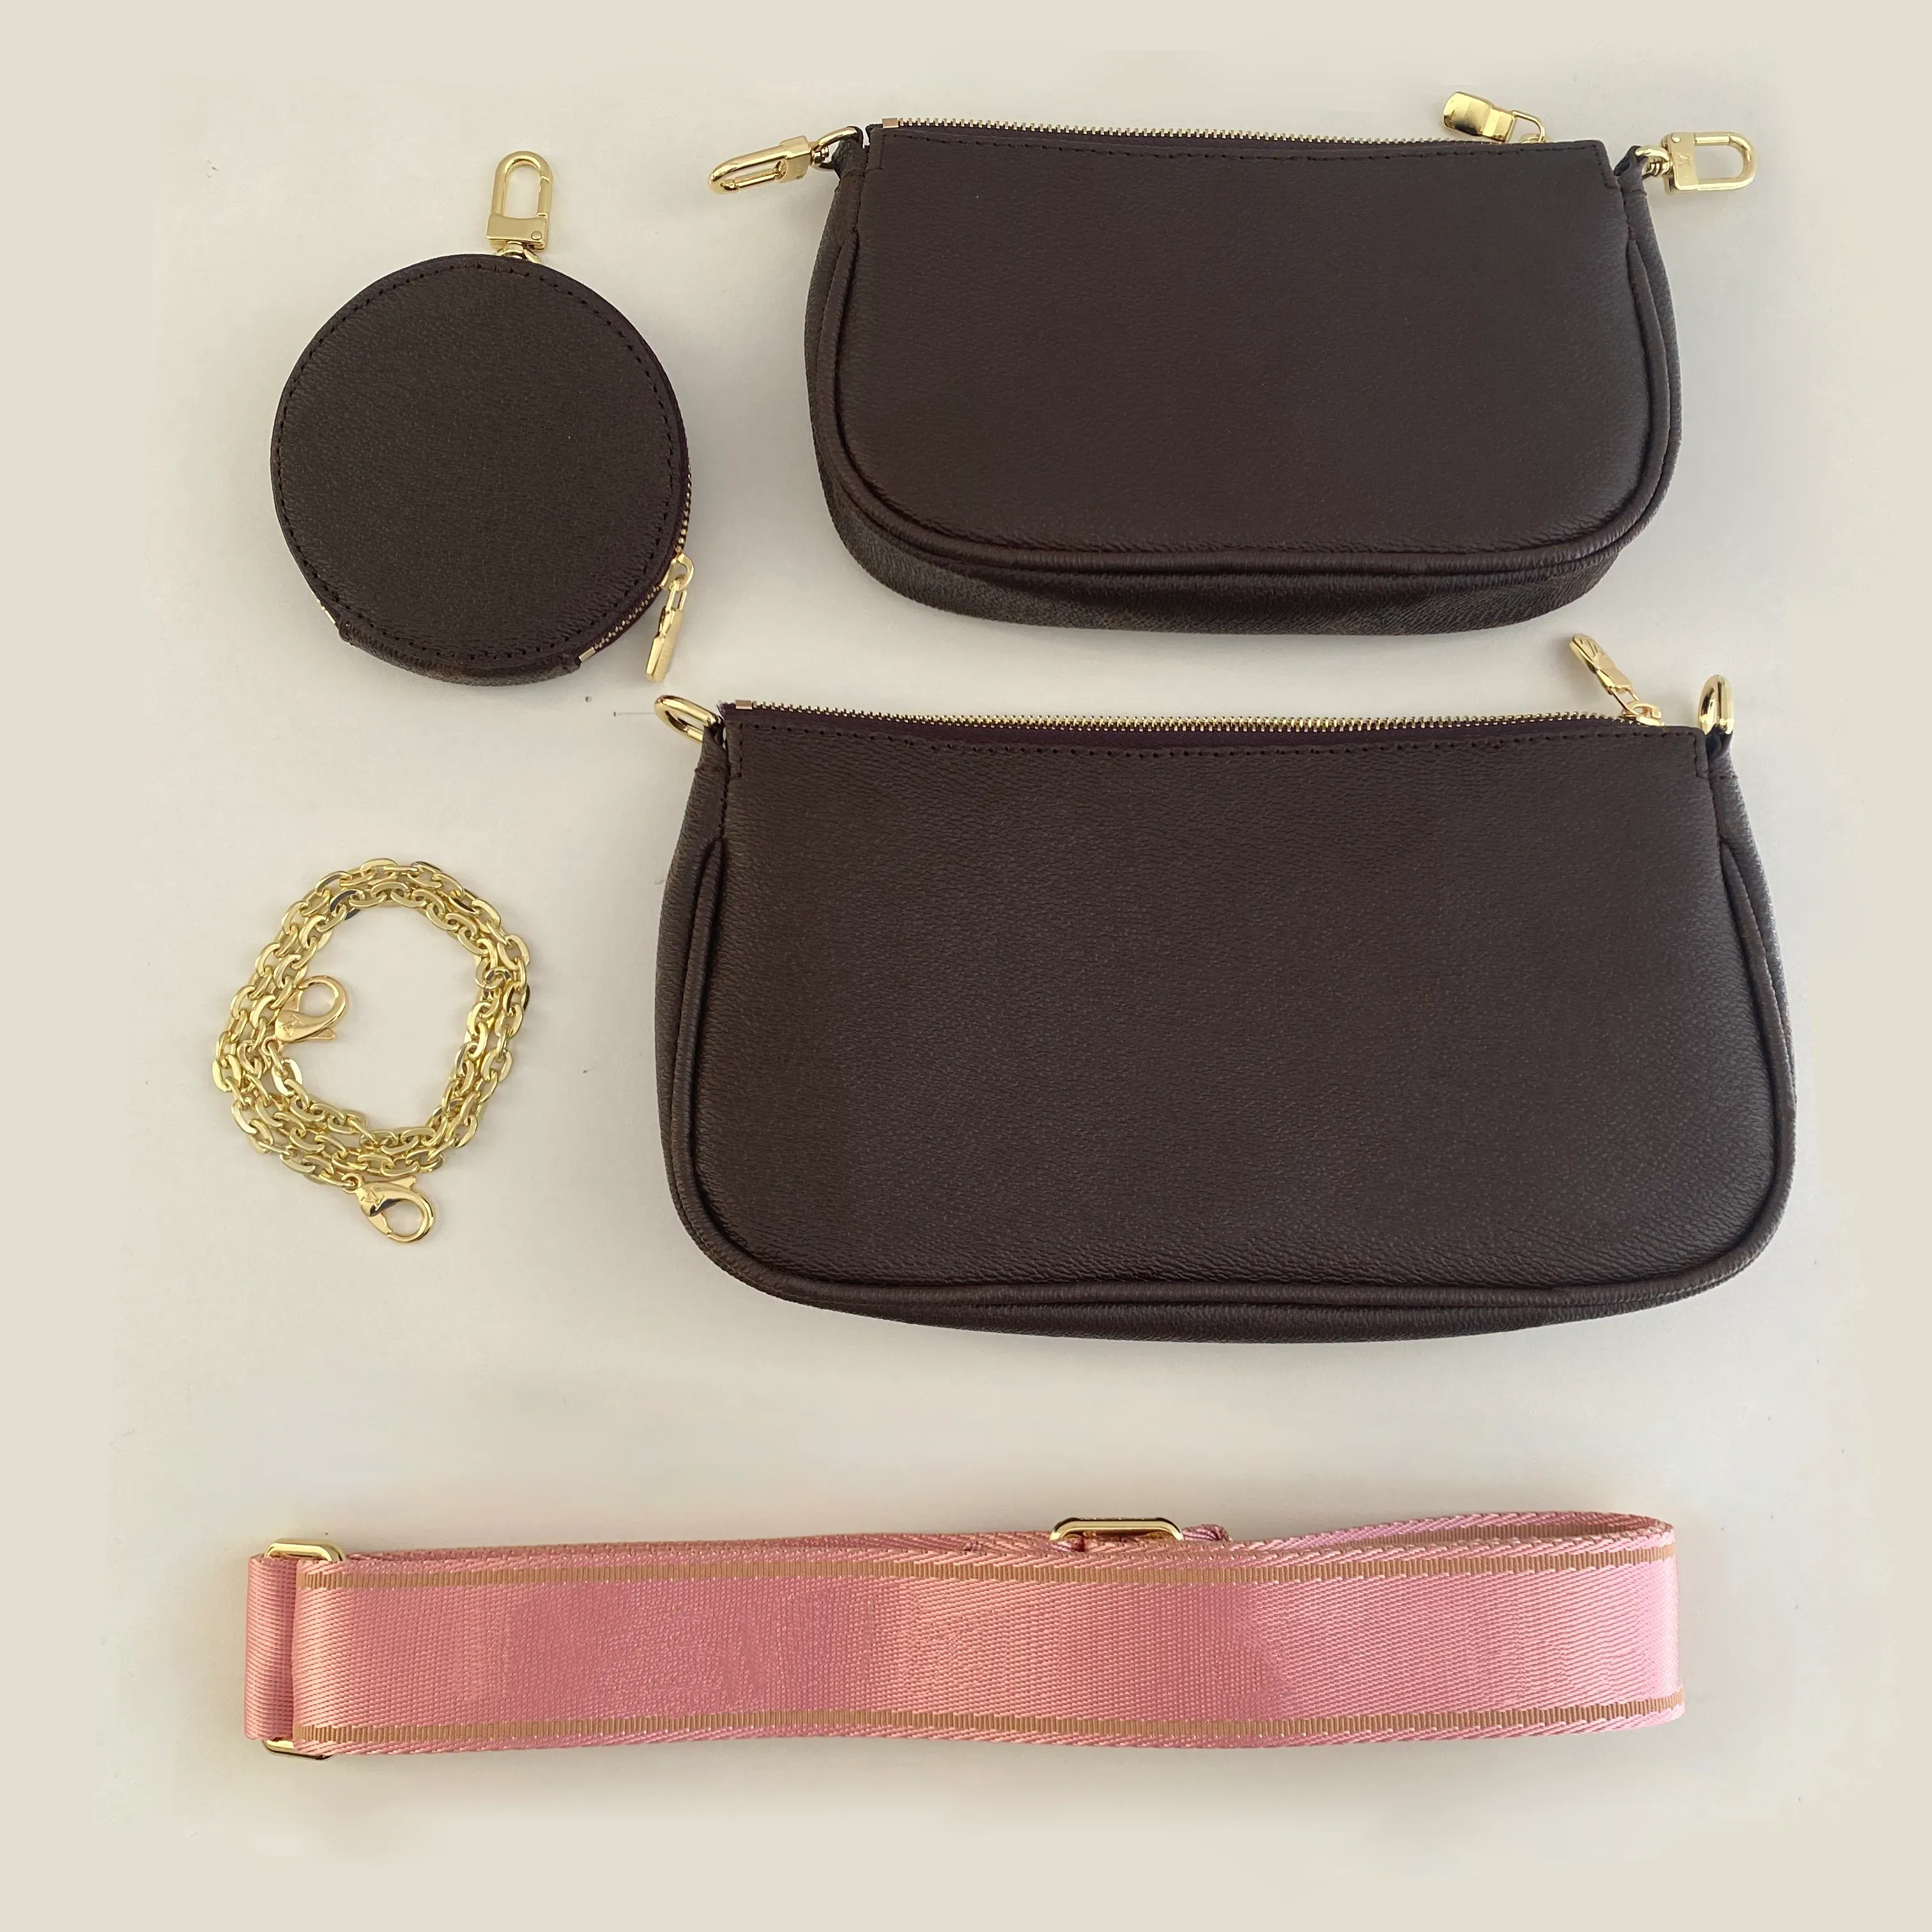 Lady Wallet épaule bandoulière chaîne sac sac à main multifonctionnel 3 en 1 portefeuille mode luxe portefeuille sac à main porte-monnaie sac à main sac à main